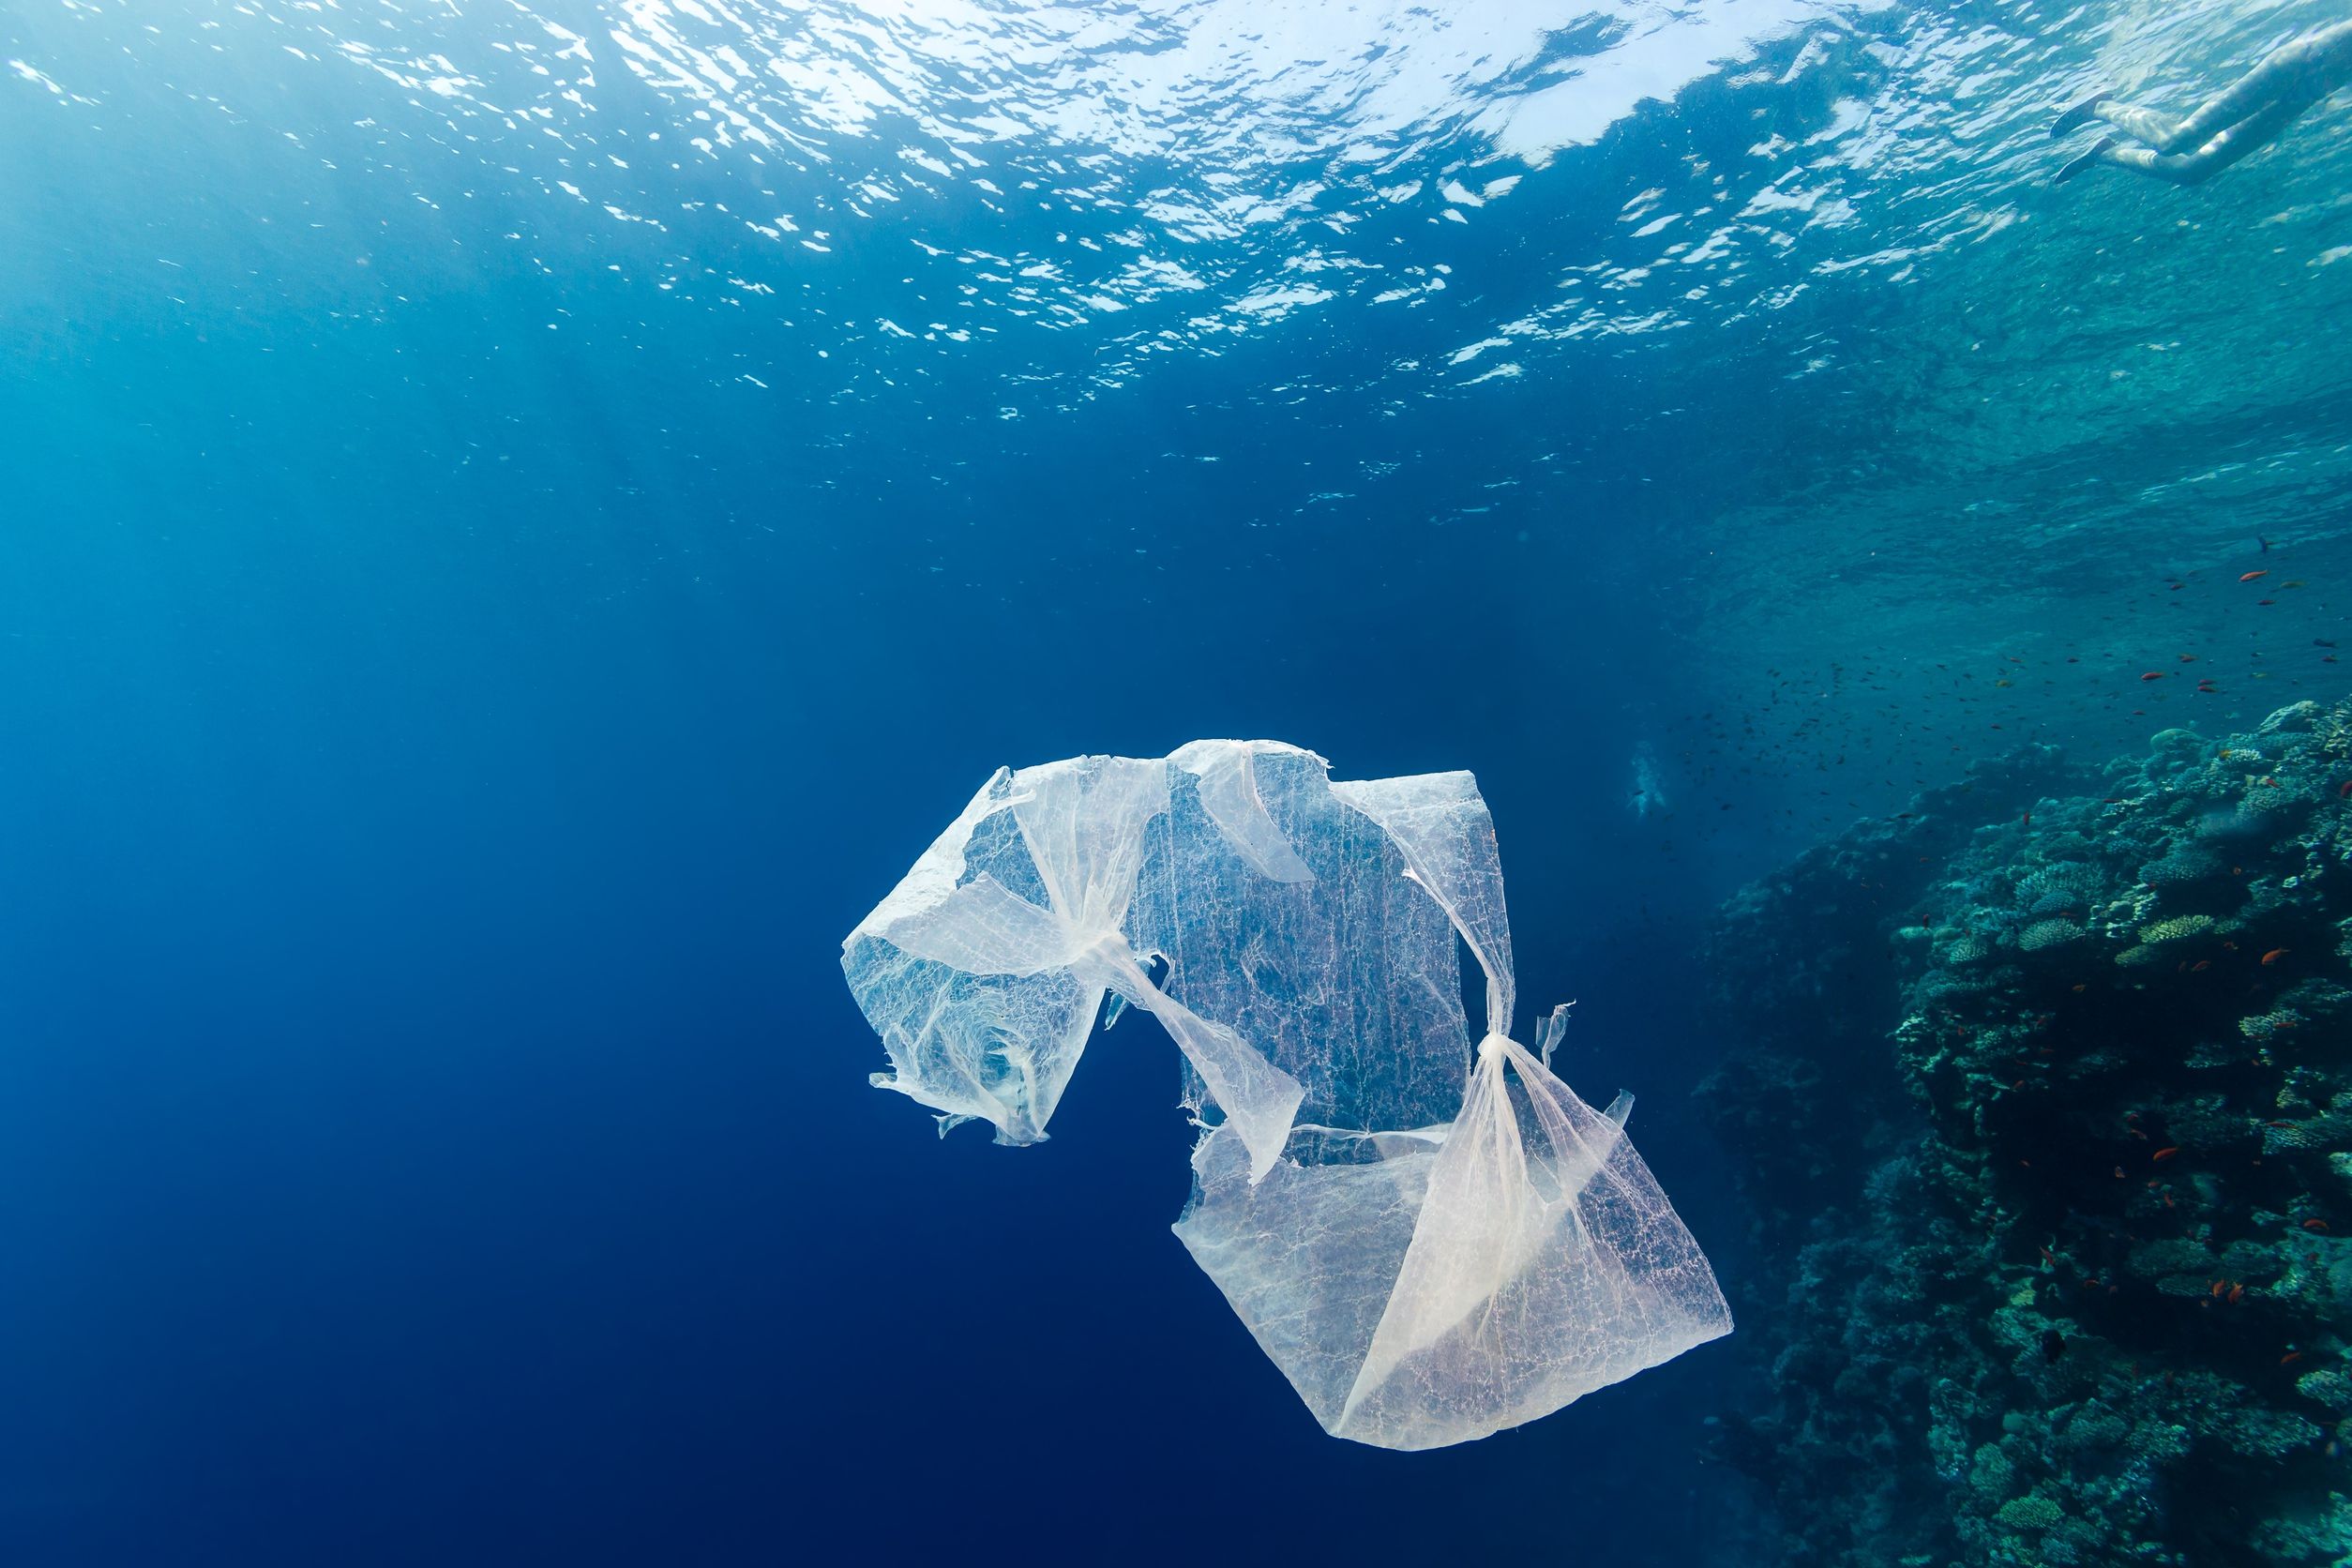 residuos plásticos en el mar,